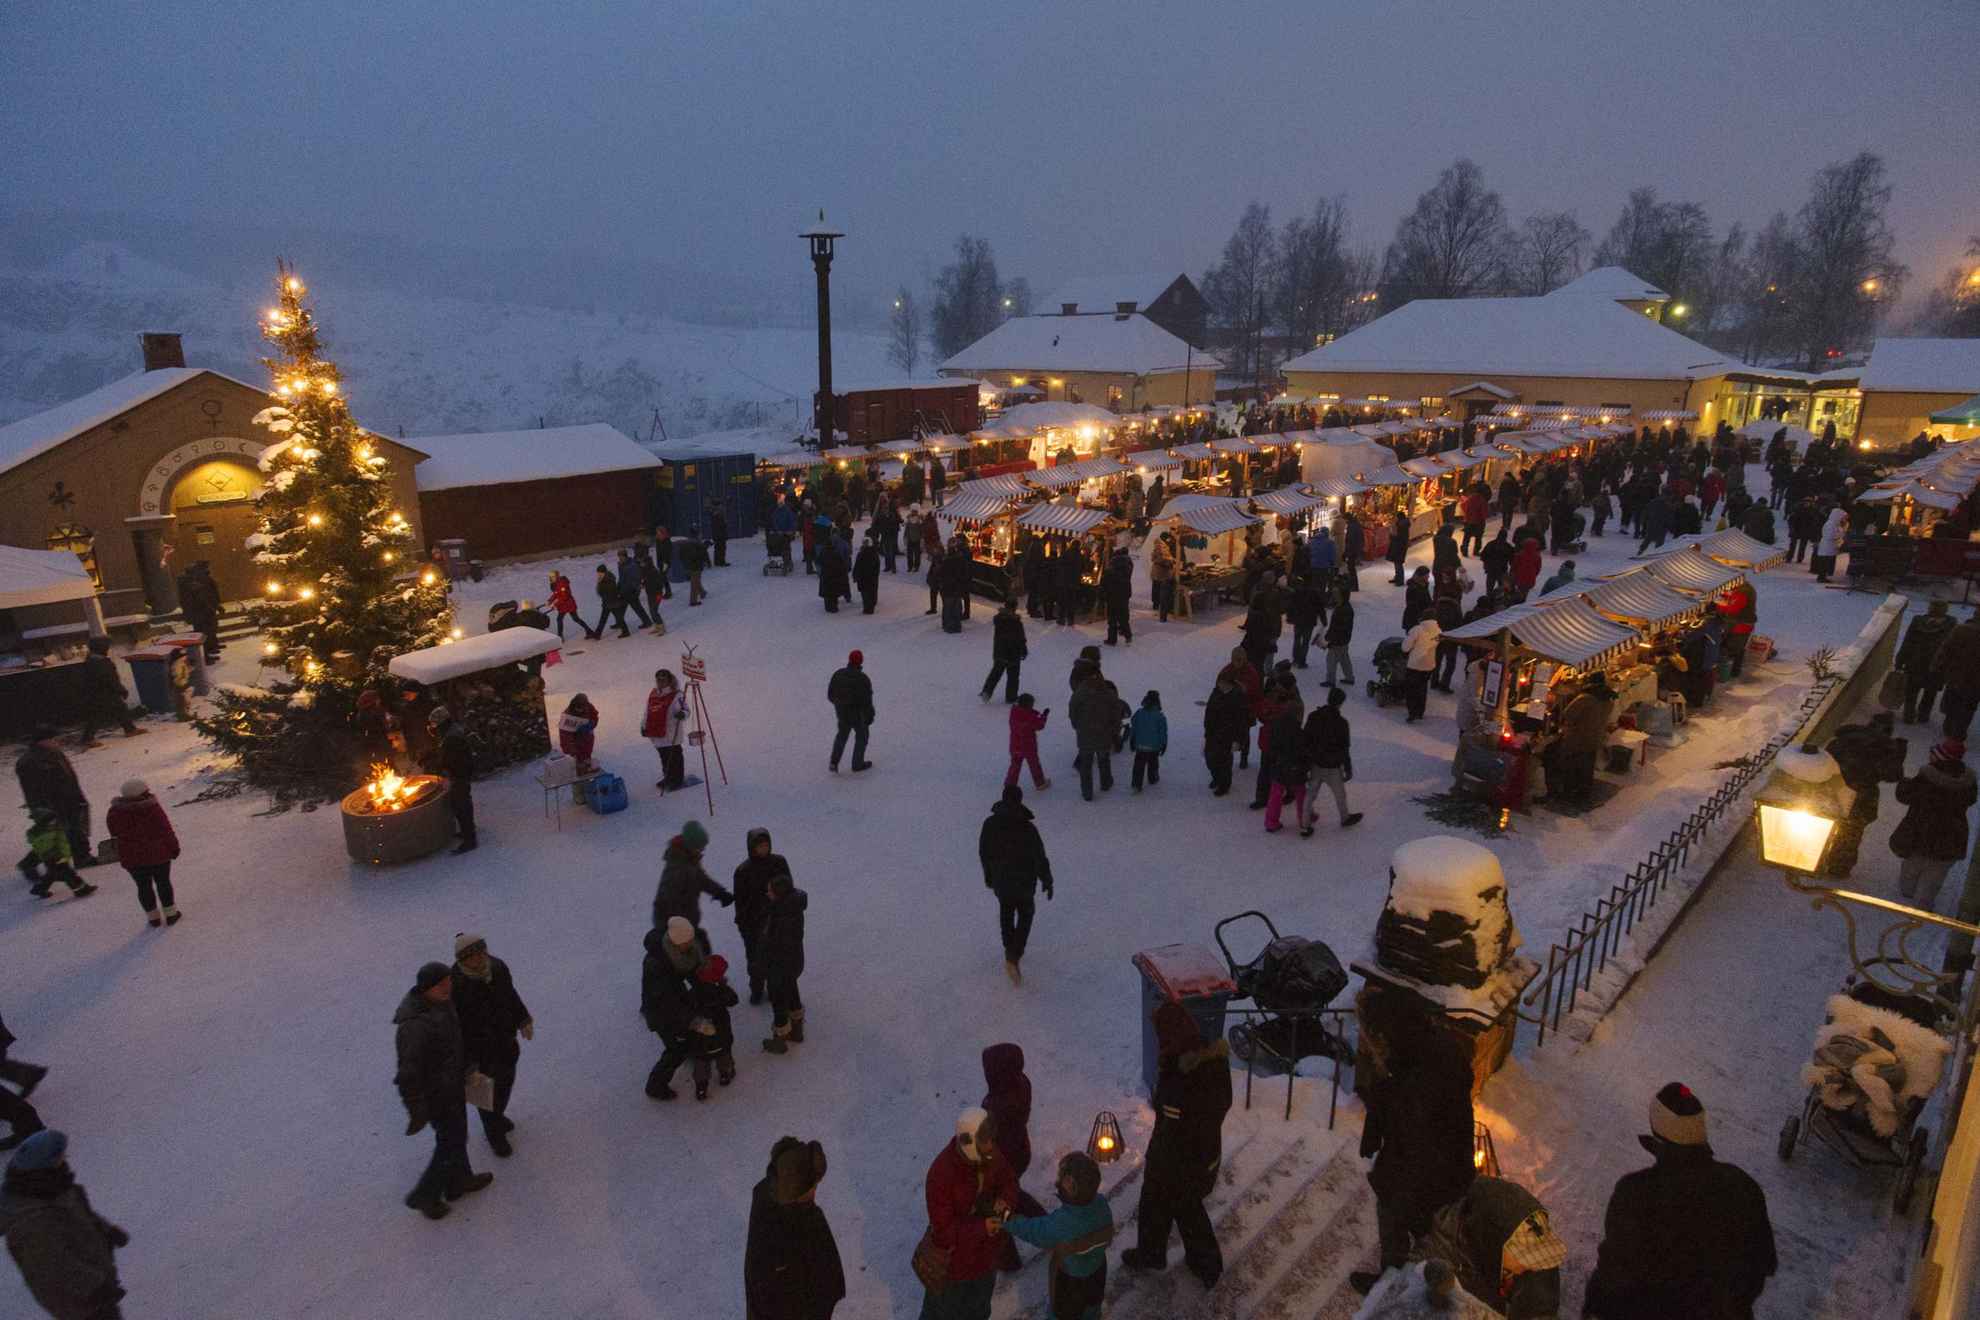 Een kerstmarkt in de sneeuw, met veel kraampjes, mensen en een grote kerstboom bij een klein kampvuurtje.